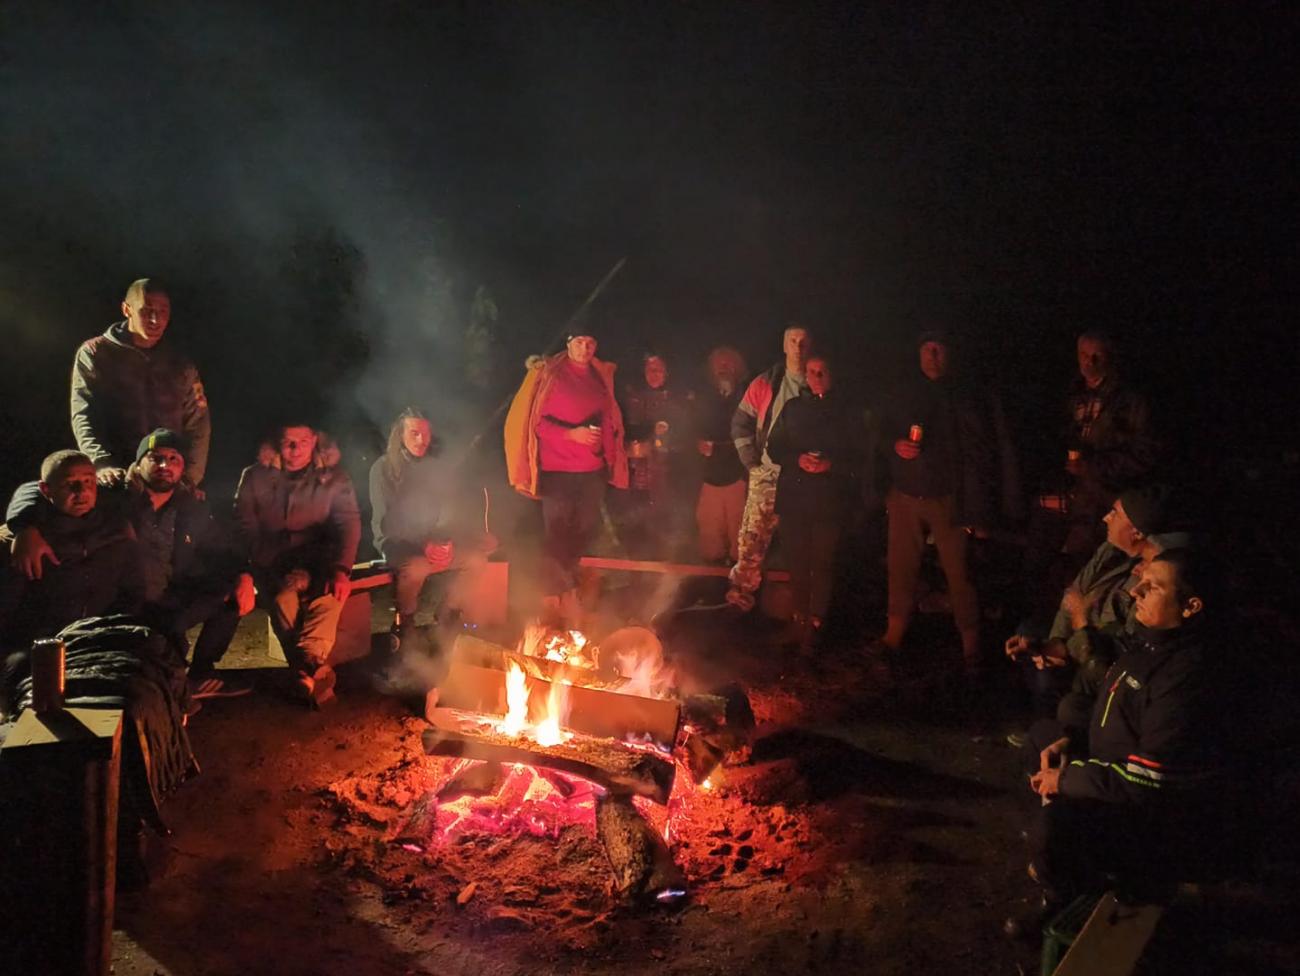 Un gran grupo de personas sentadas alrededor de una hoguera por la noche